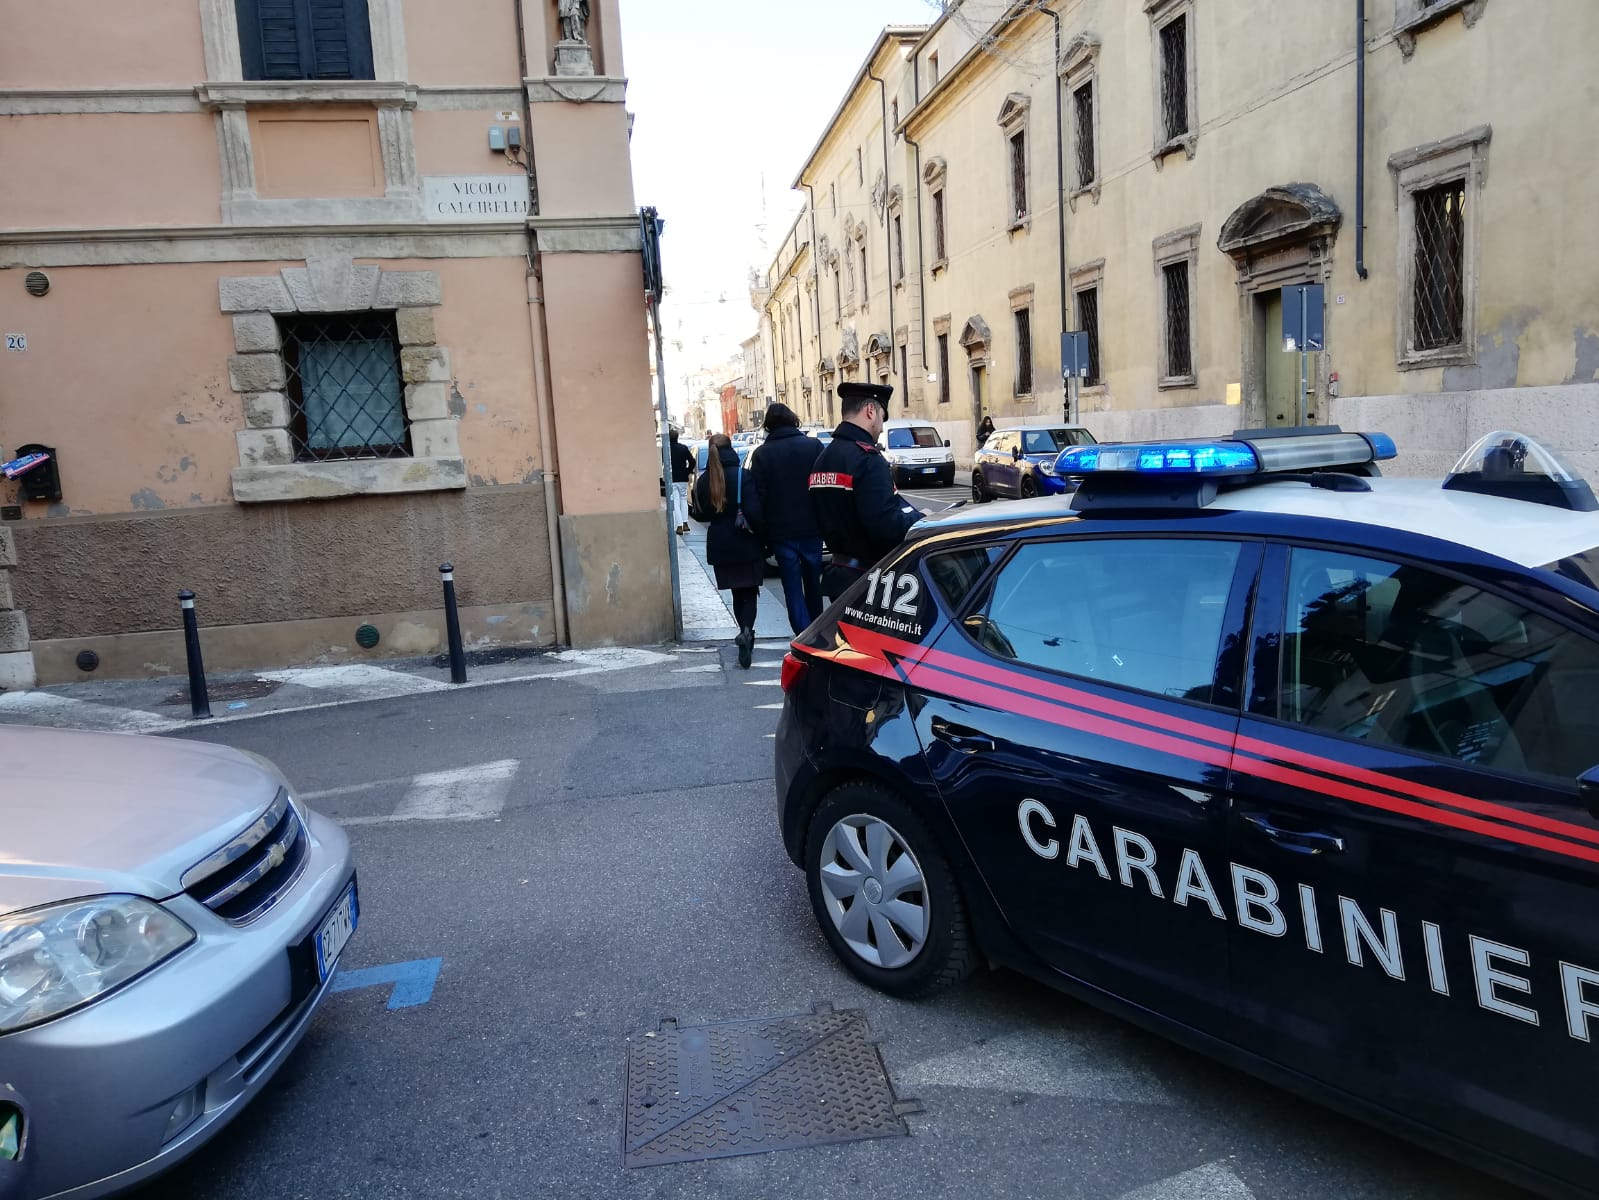 Giro di arresti a Verona in un solo giorno. I carabinieri hanno arrestato quattro persone in un solo giorno per violenza, detenzione di stupefacenti, oltraggio e resistenza a Pubblico Ufficiale e furto. 